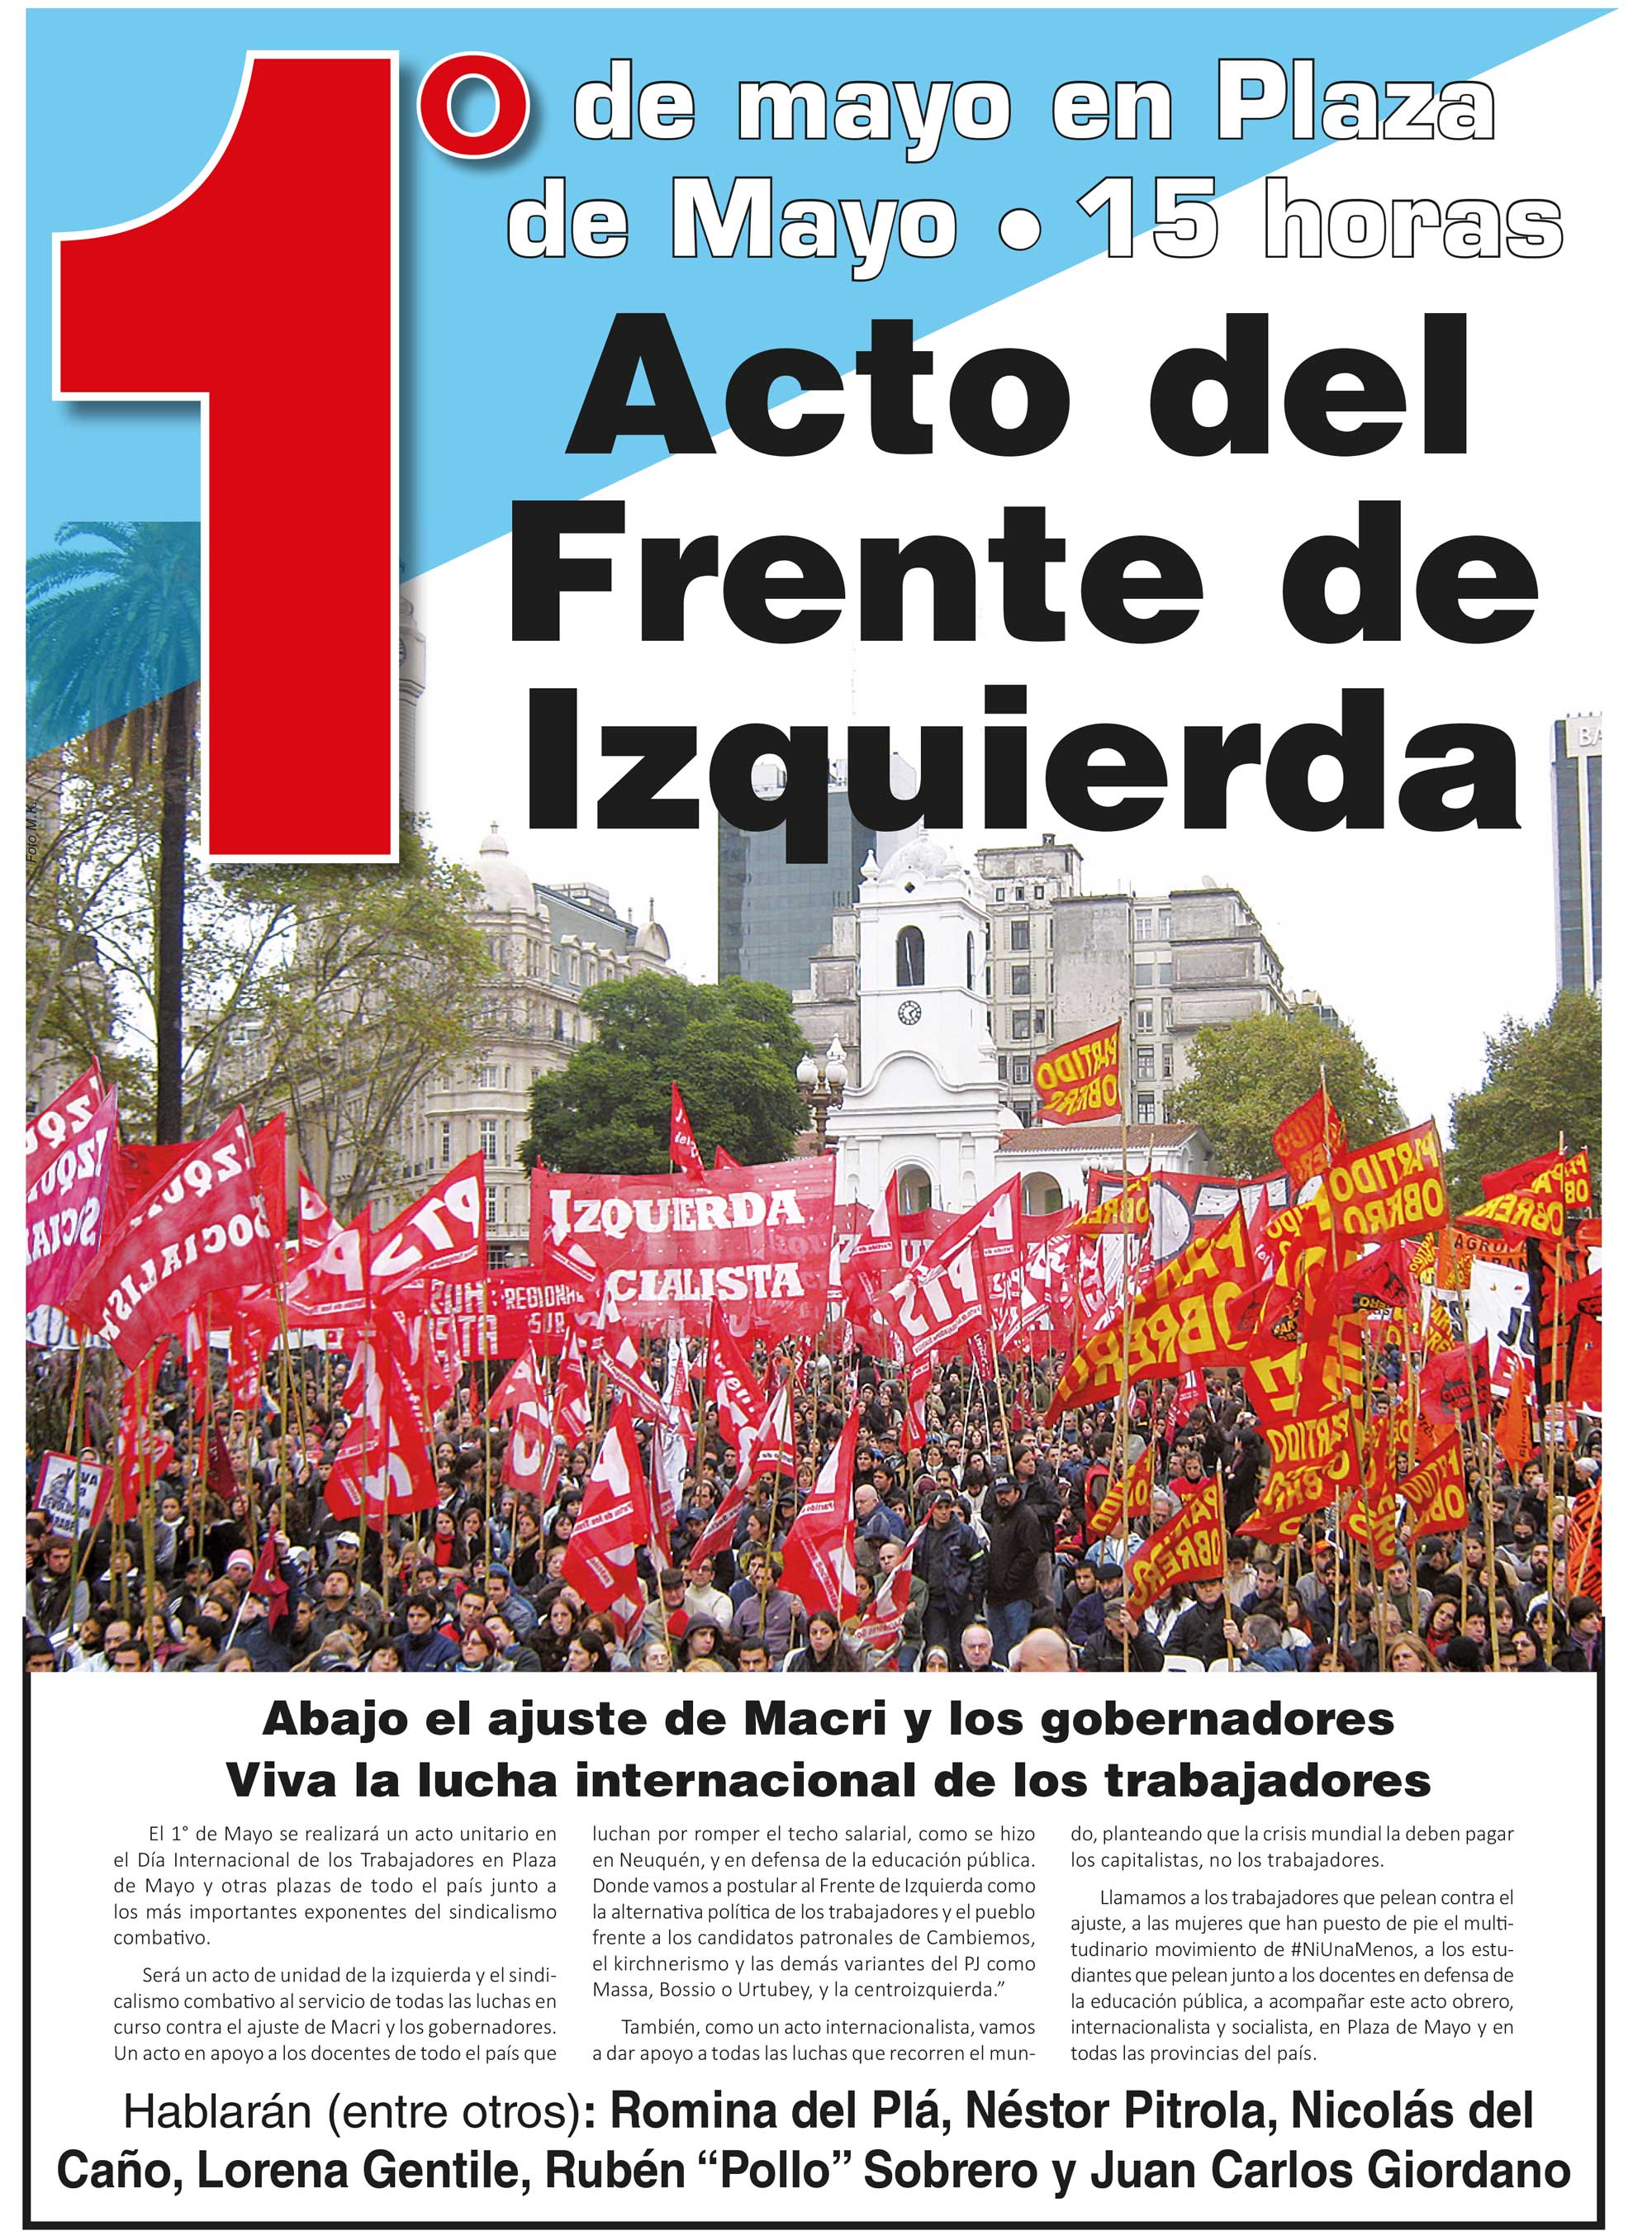 Contratapa de la edición N° 347 de nuestro periódico El Socialista